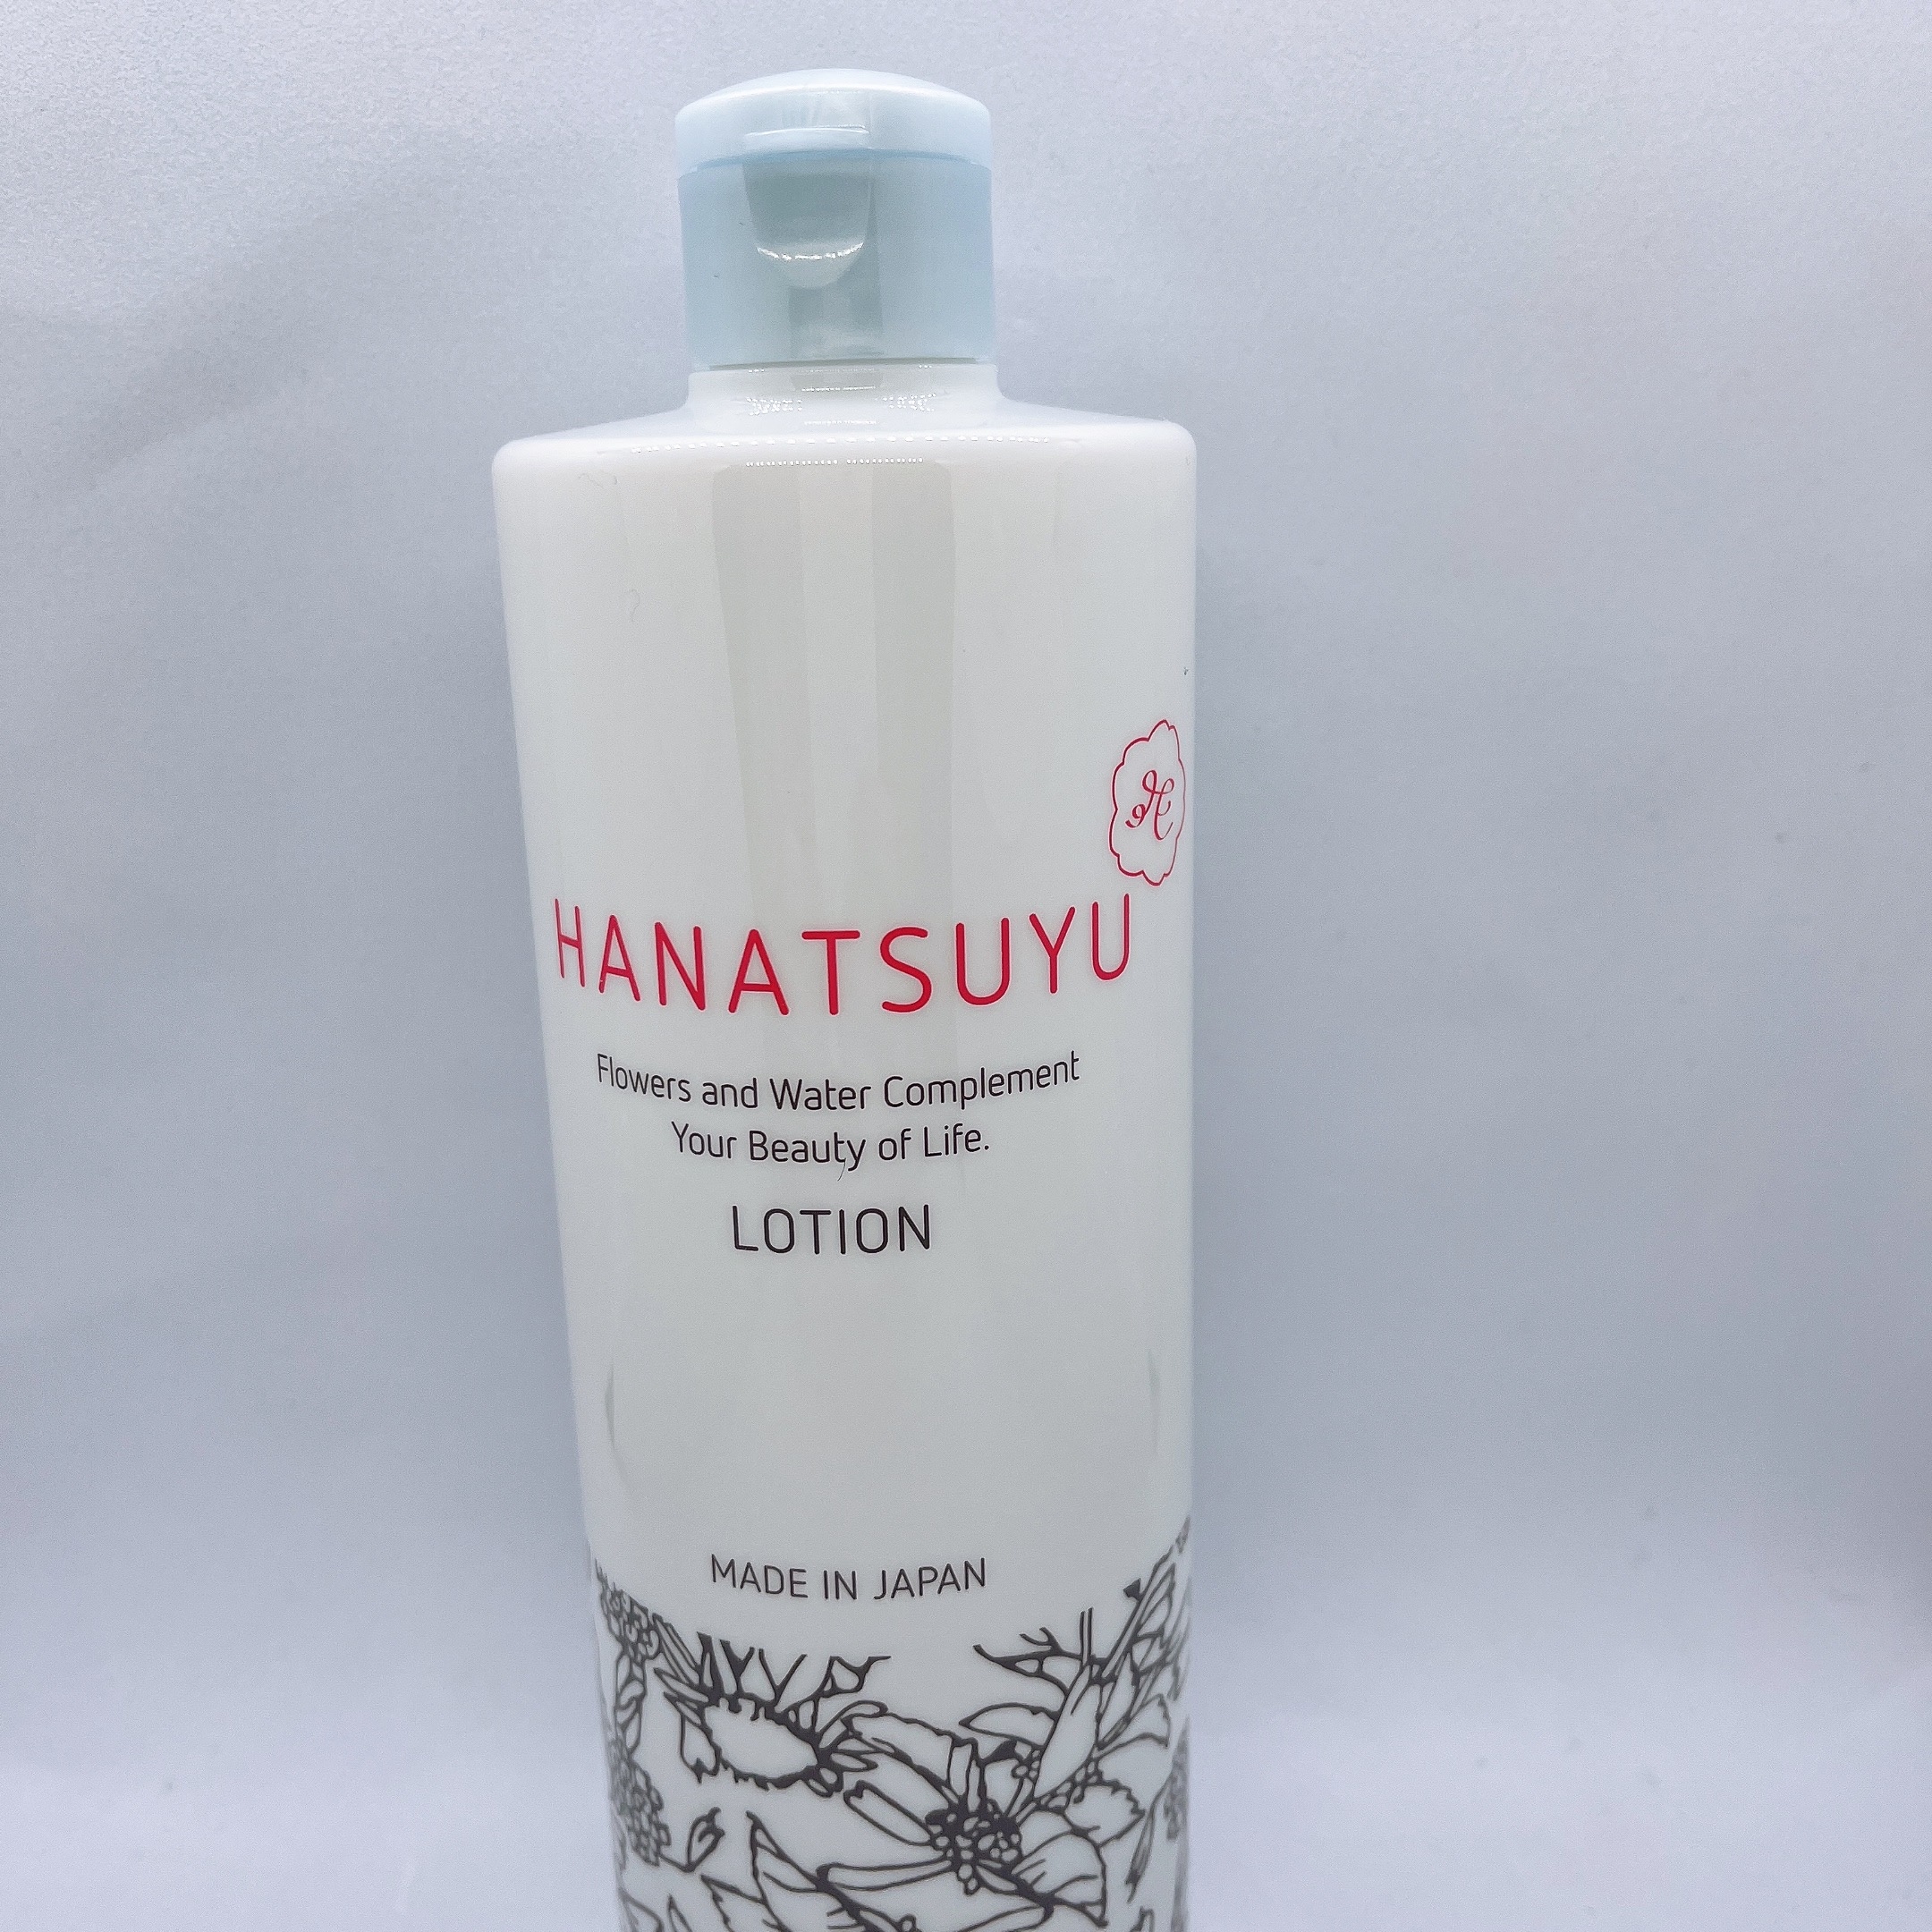 HANATSUYU(ハナツユ) 化粧水に関するまりたそさんの口コミ画像2